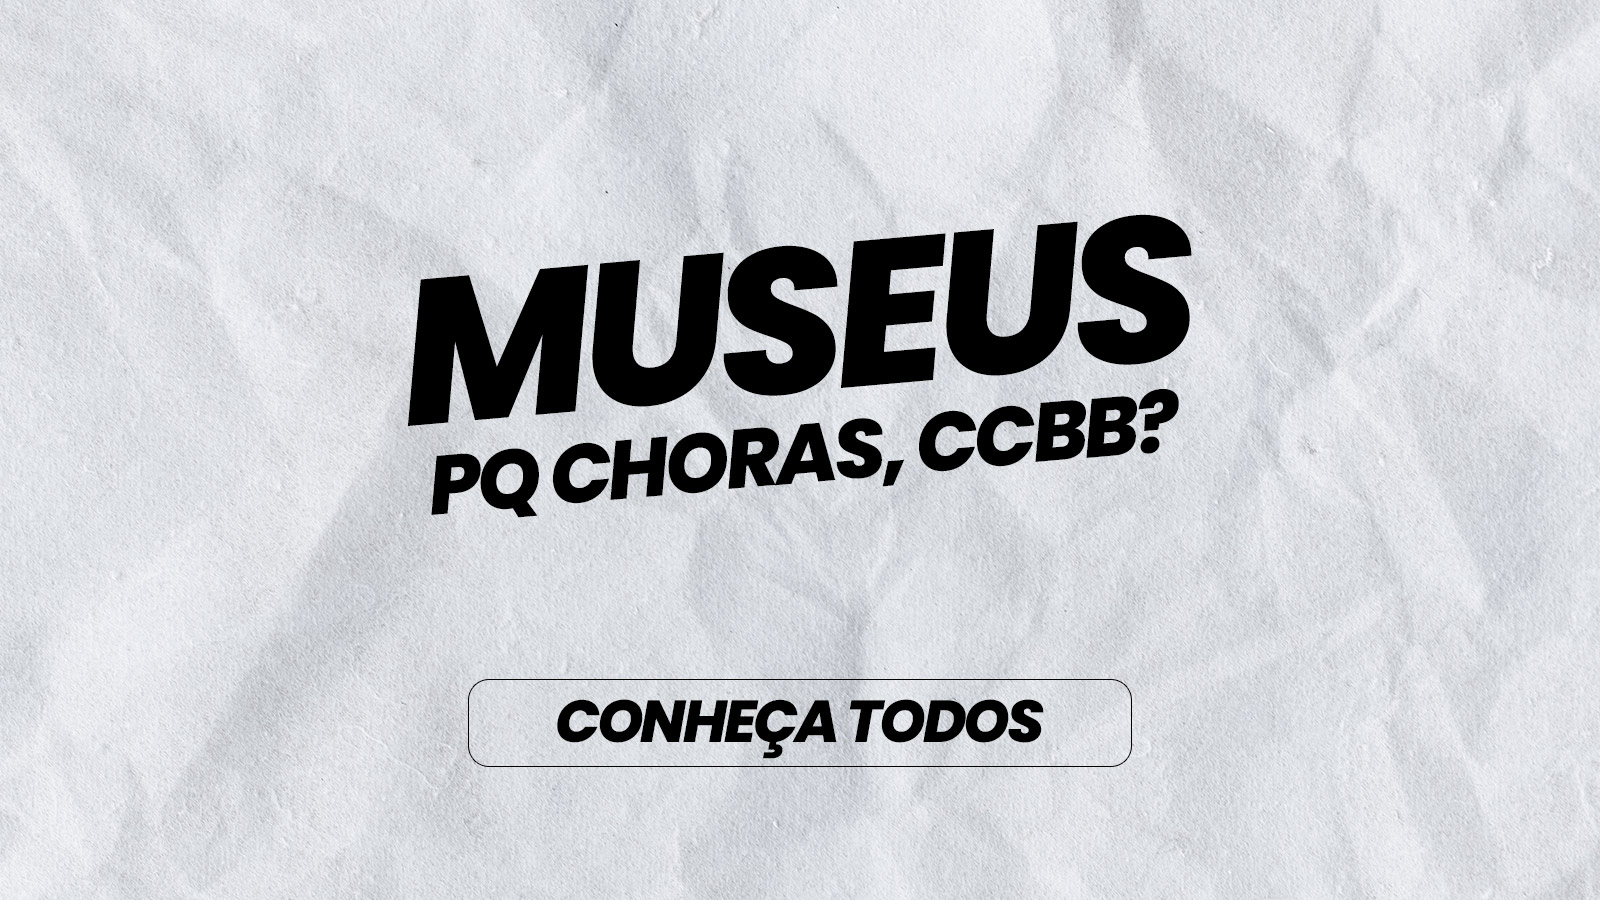 Museus na Baixada Fluminense